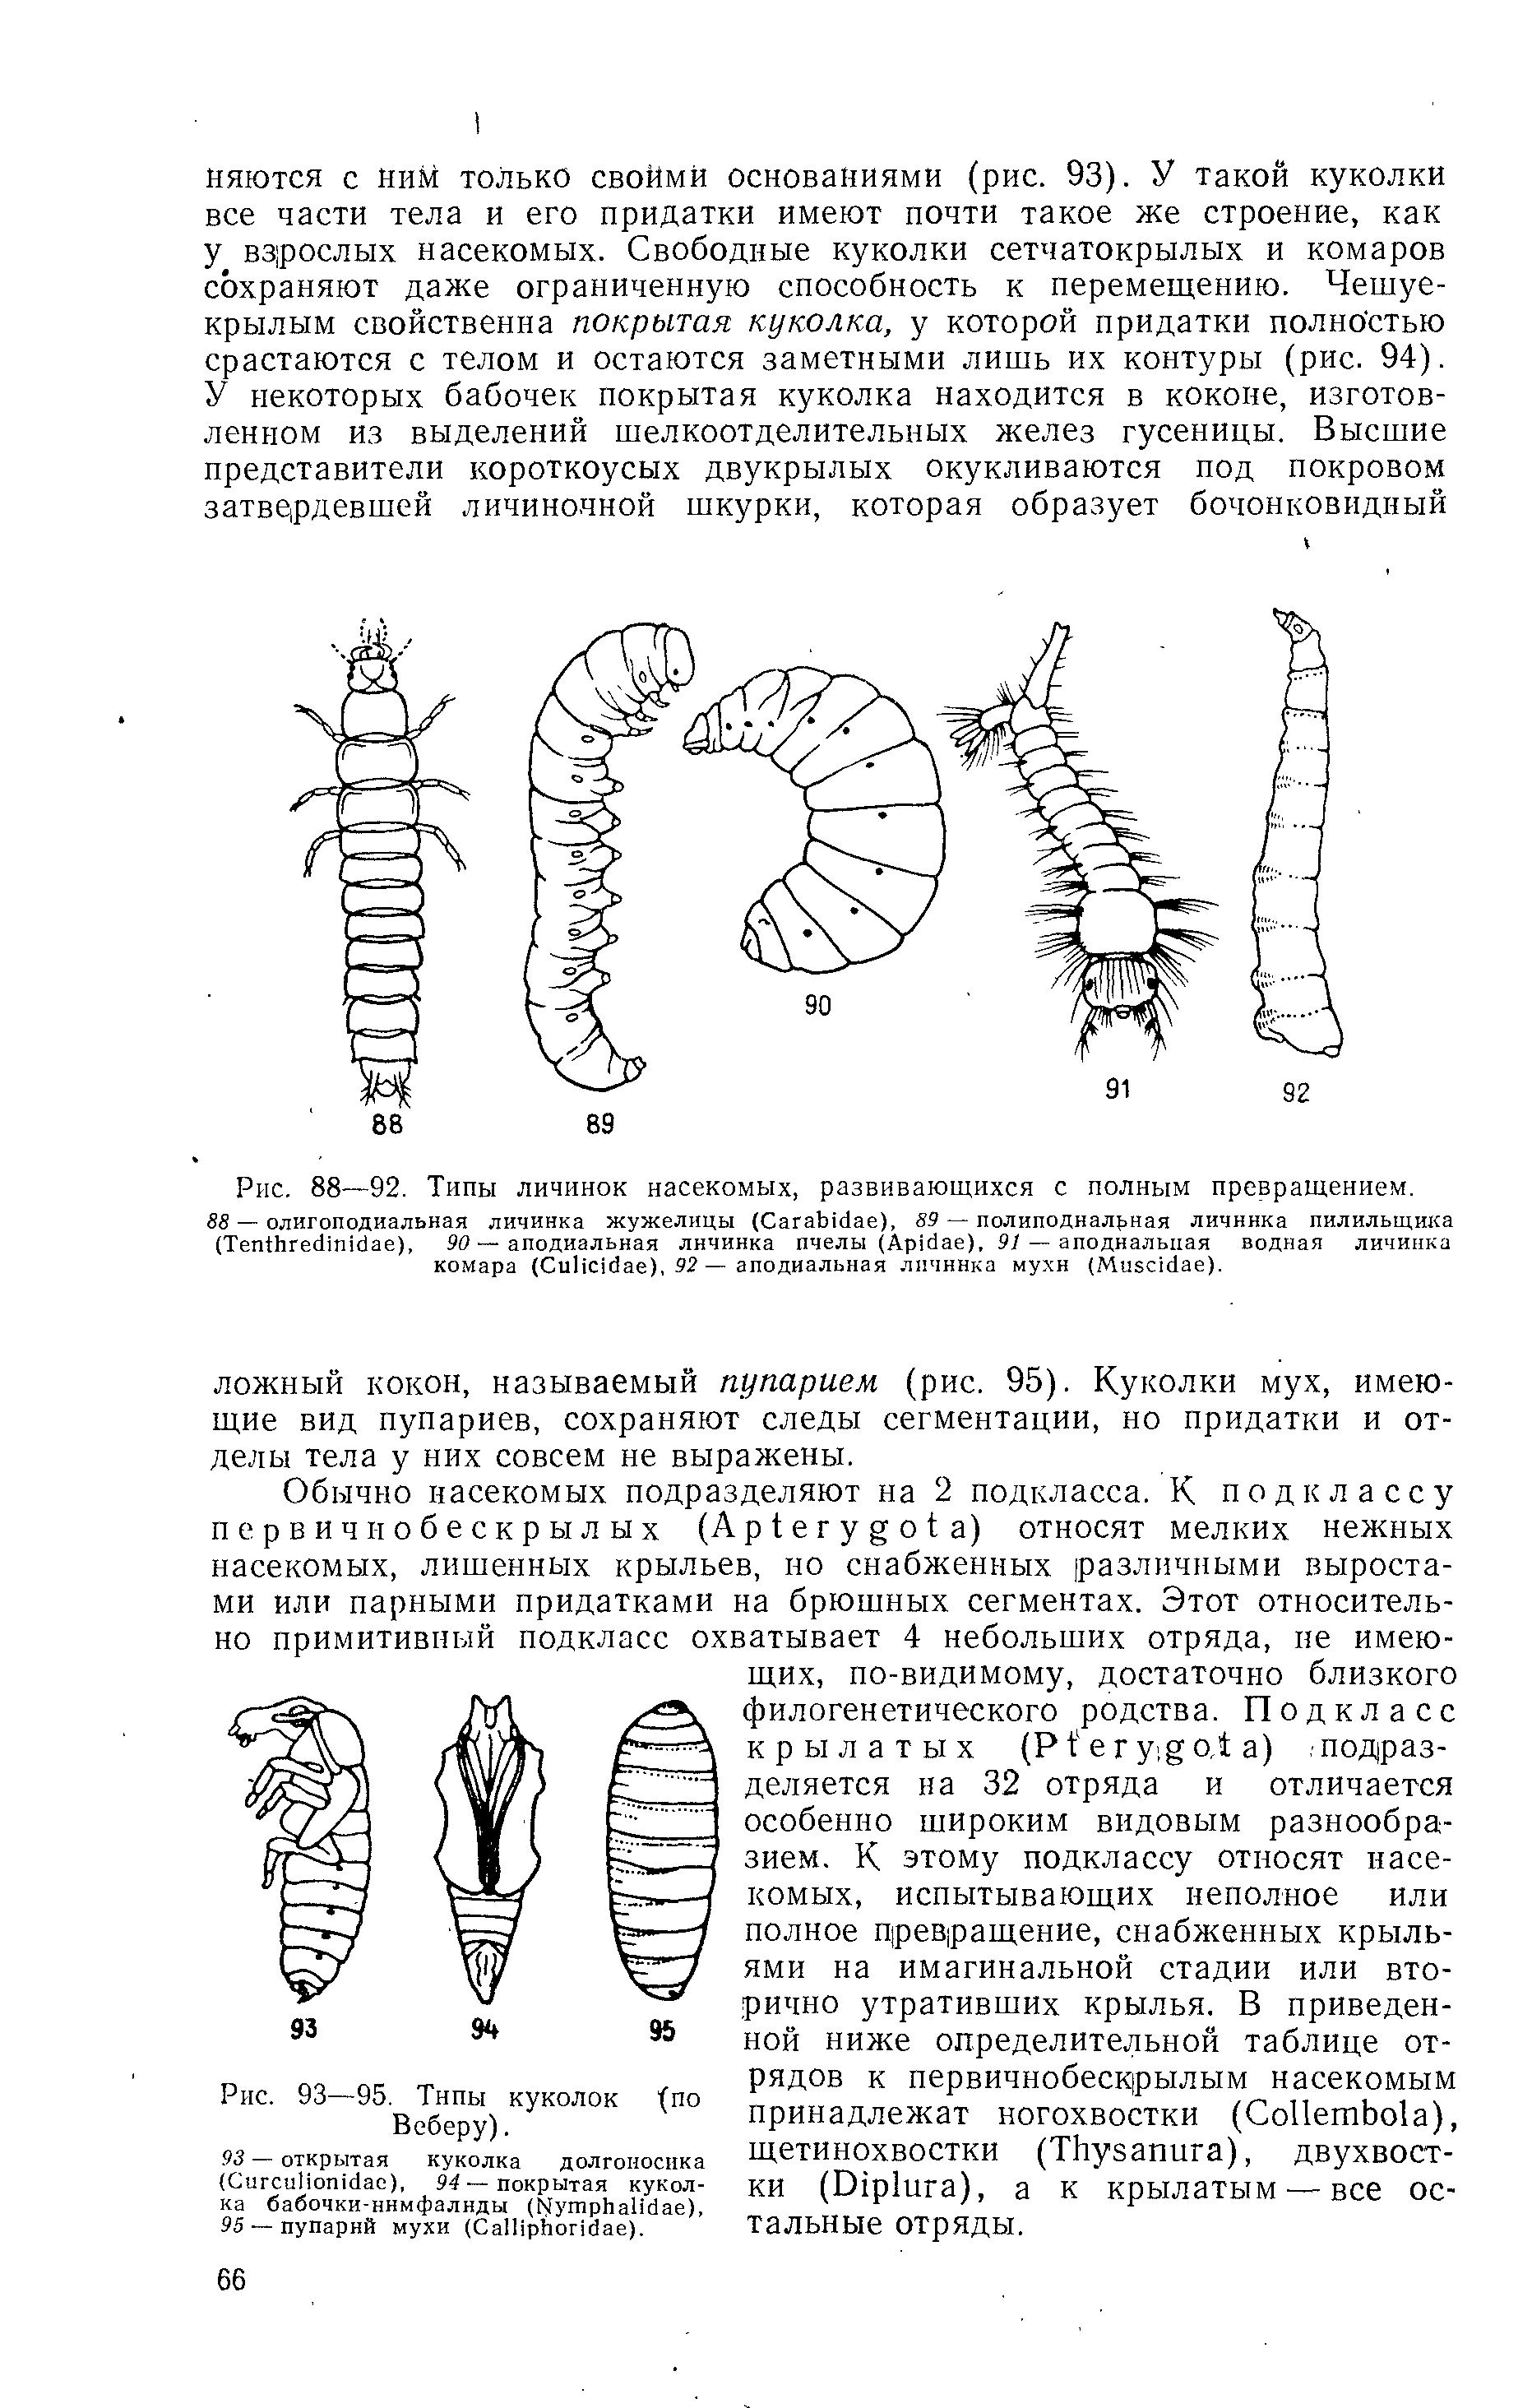 Рис. 88—92. Типы личинок насекомых, развивающихся с полным превращением.